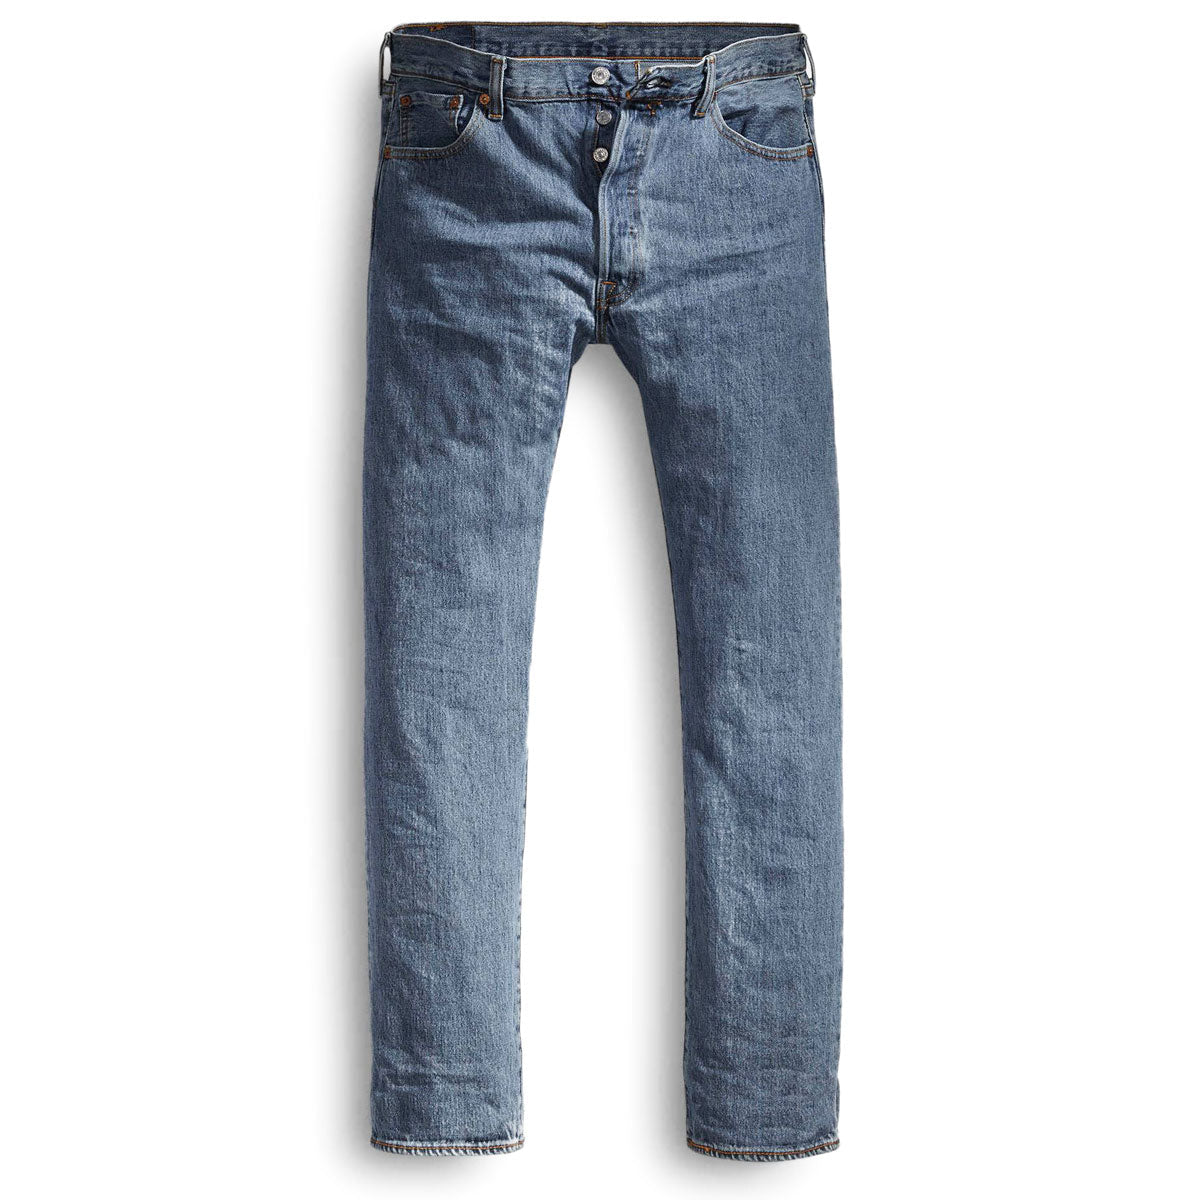 Levi's 501 Original Jeans - Medium Stonewash image 4